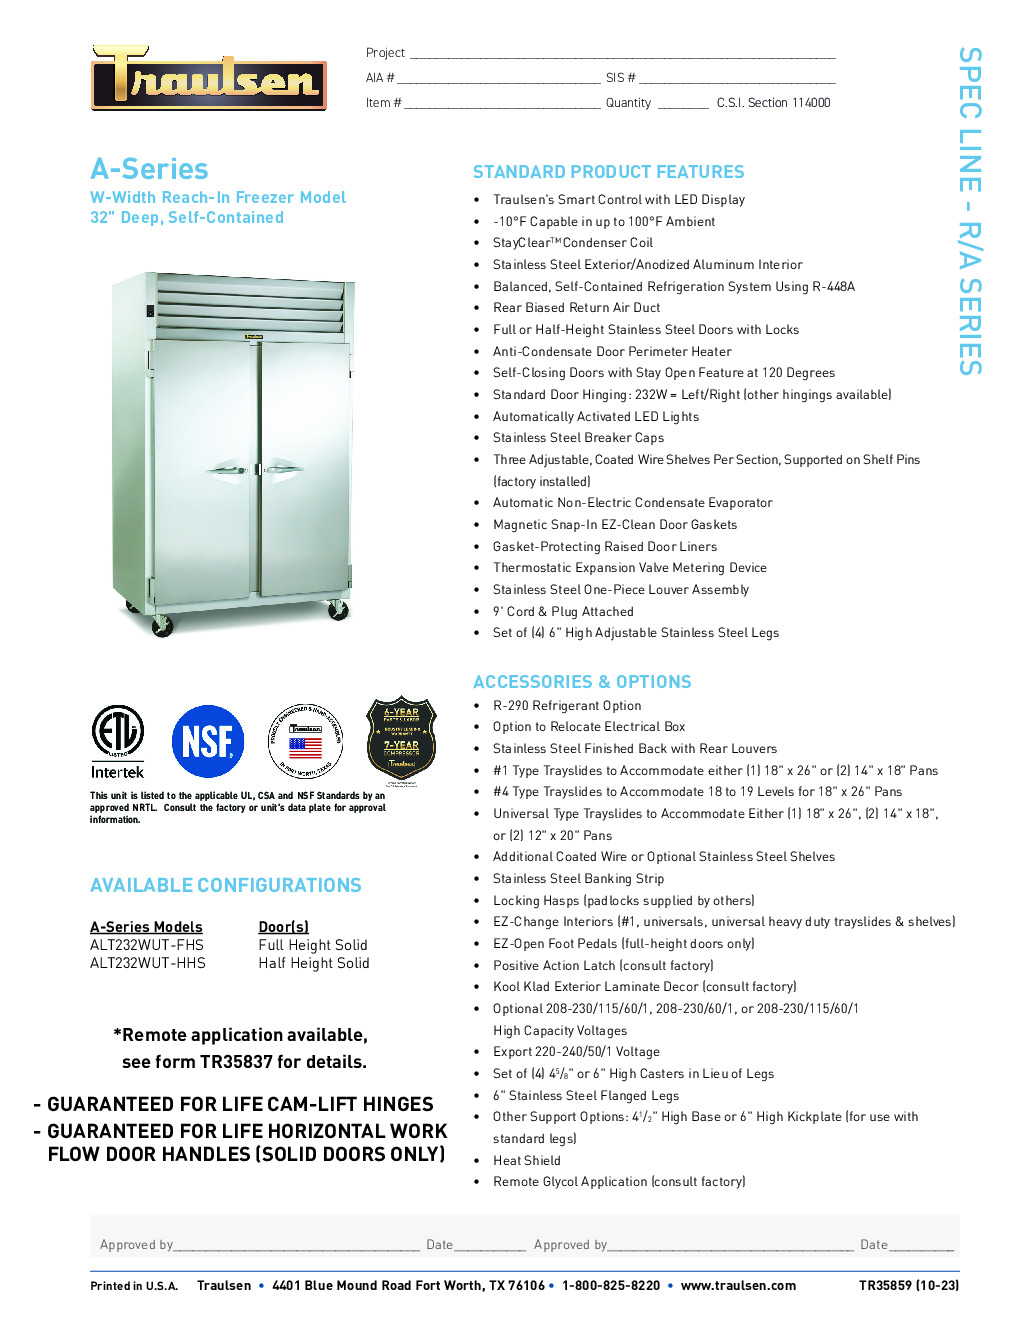 Traulsen ALT232WUT-FHS Reach-In Freezer